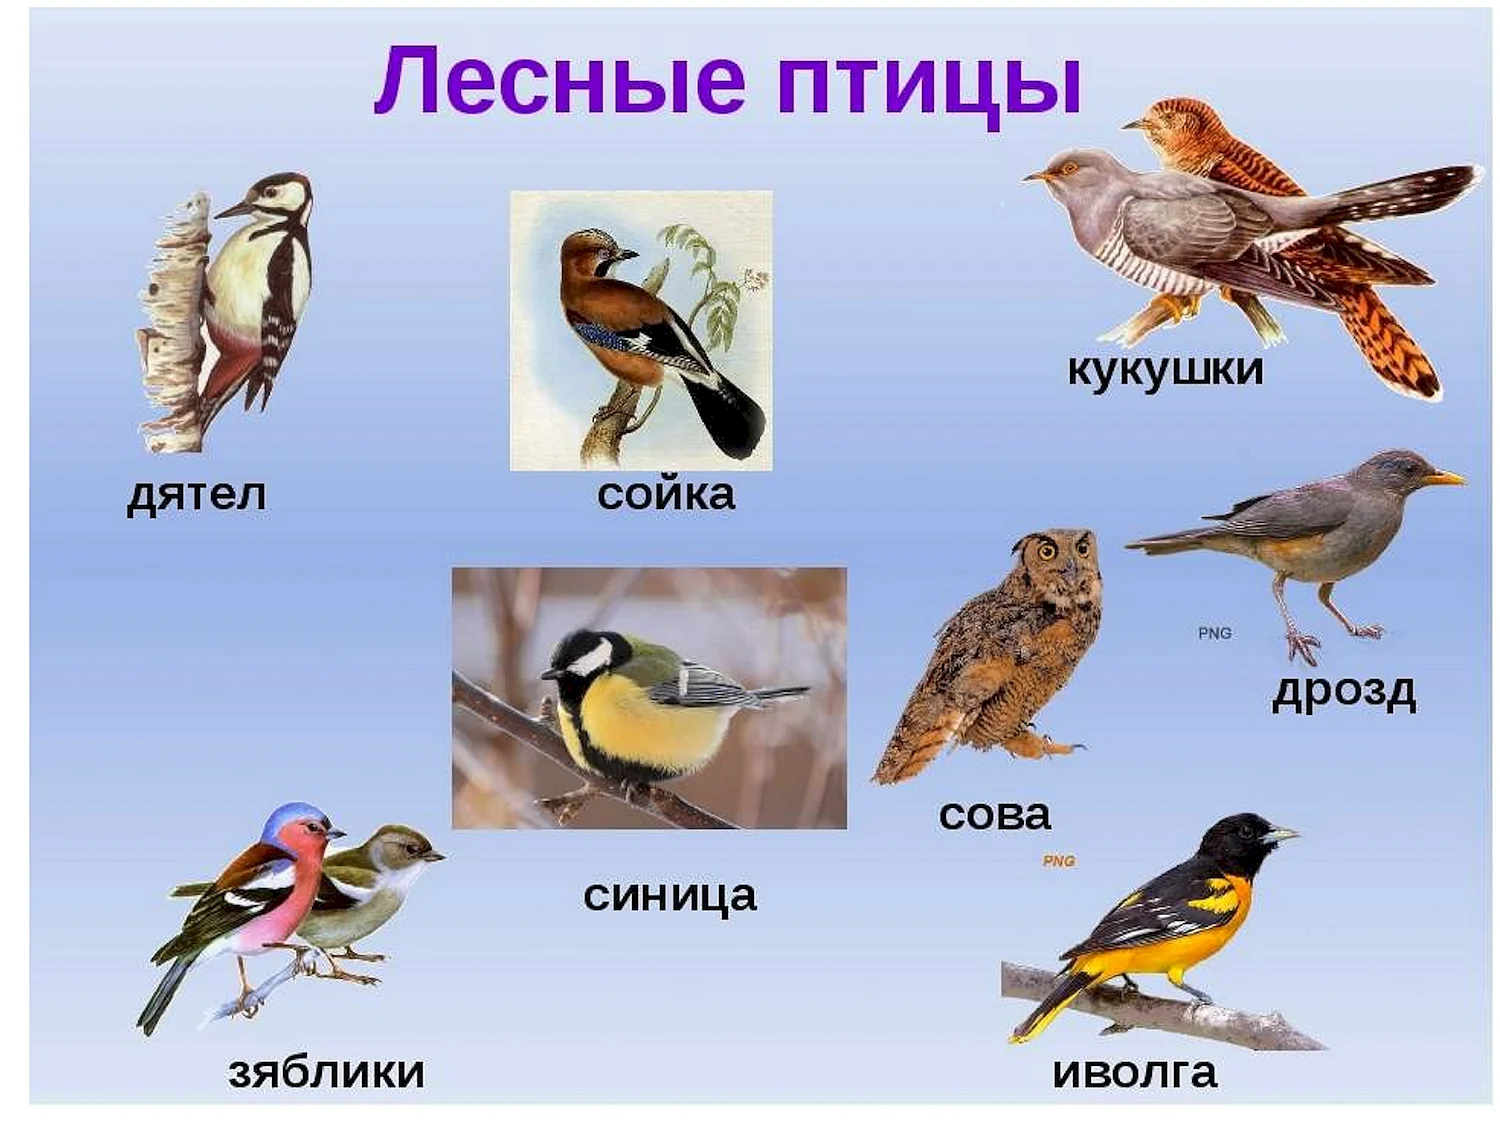 Птицы средней полосы россии